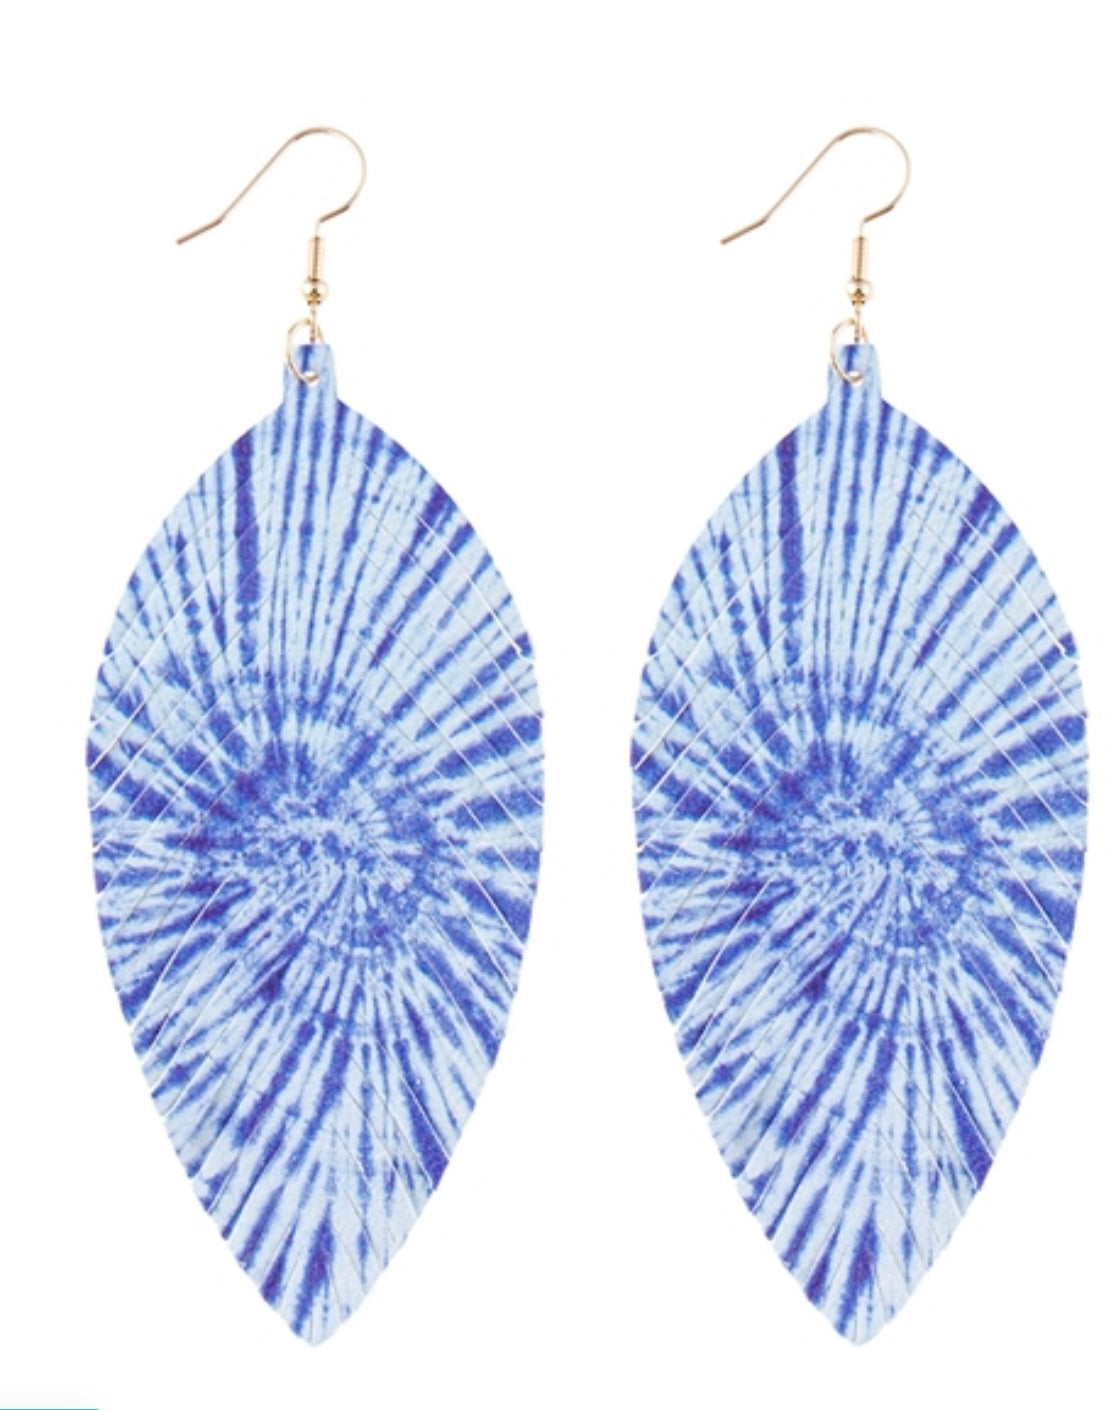 Whitlwind blue earrings